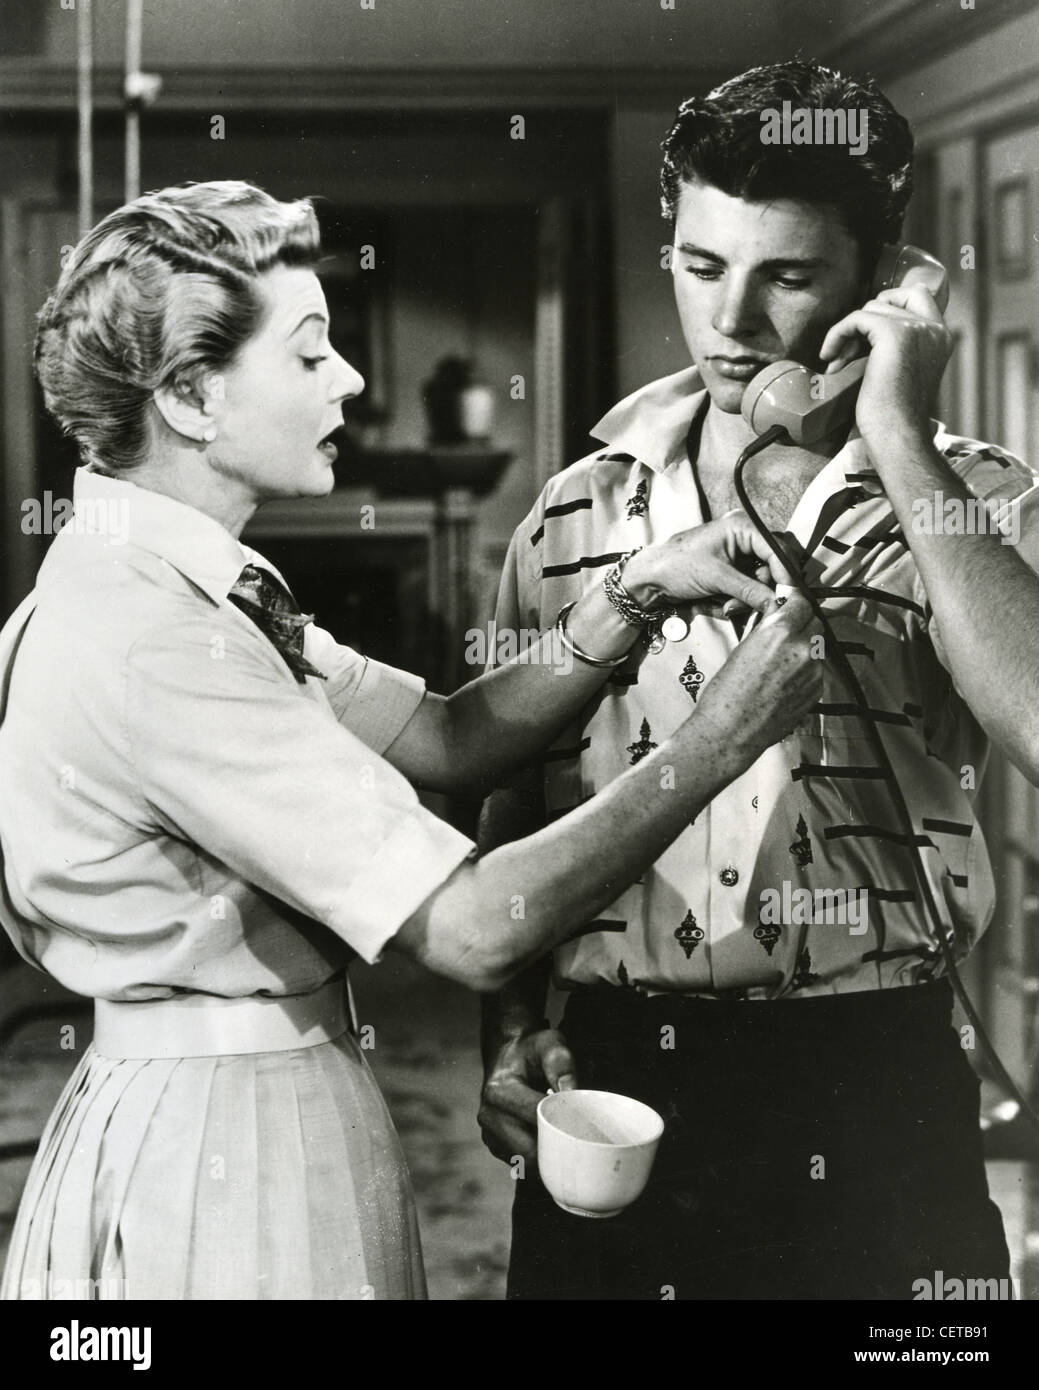 Les aventures d'OZZIE ET HARRIET - Ricky Nelson et Harriet Hilliard dans séries télévisées américaines (1952-1966) Banque D'Images